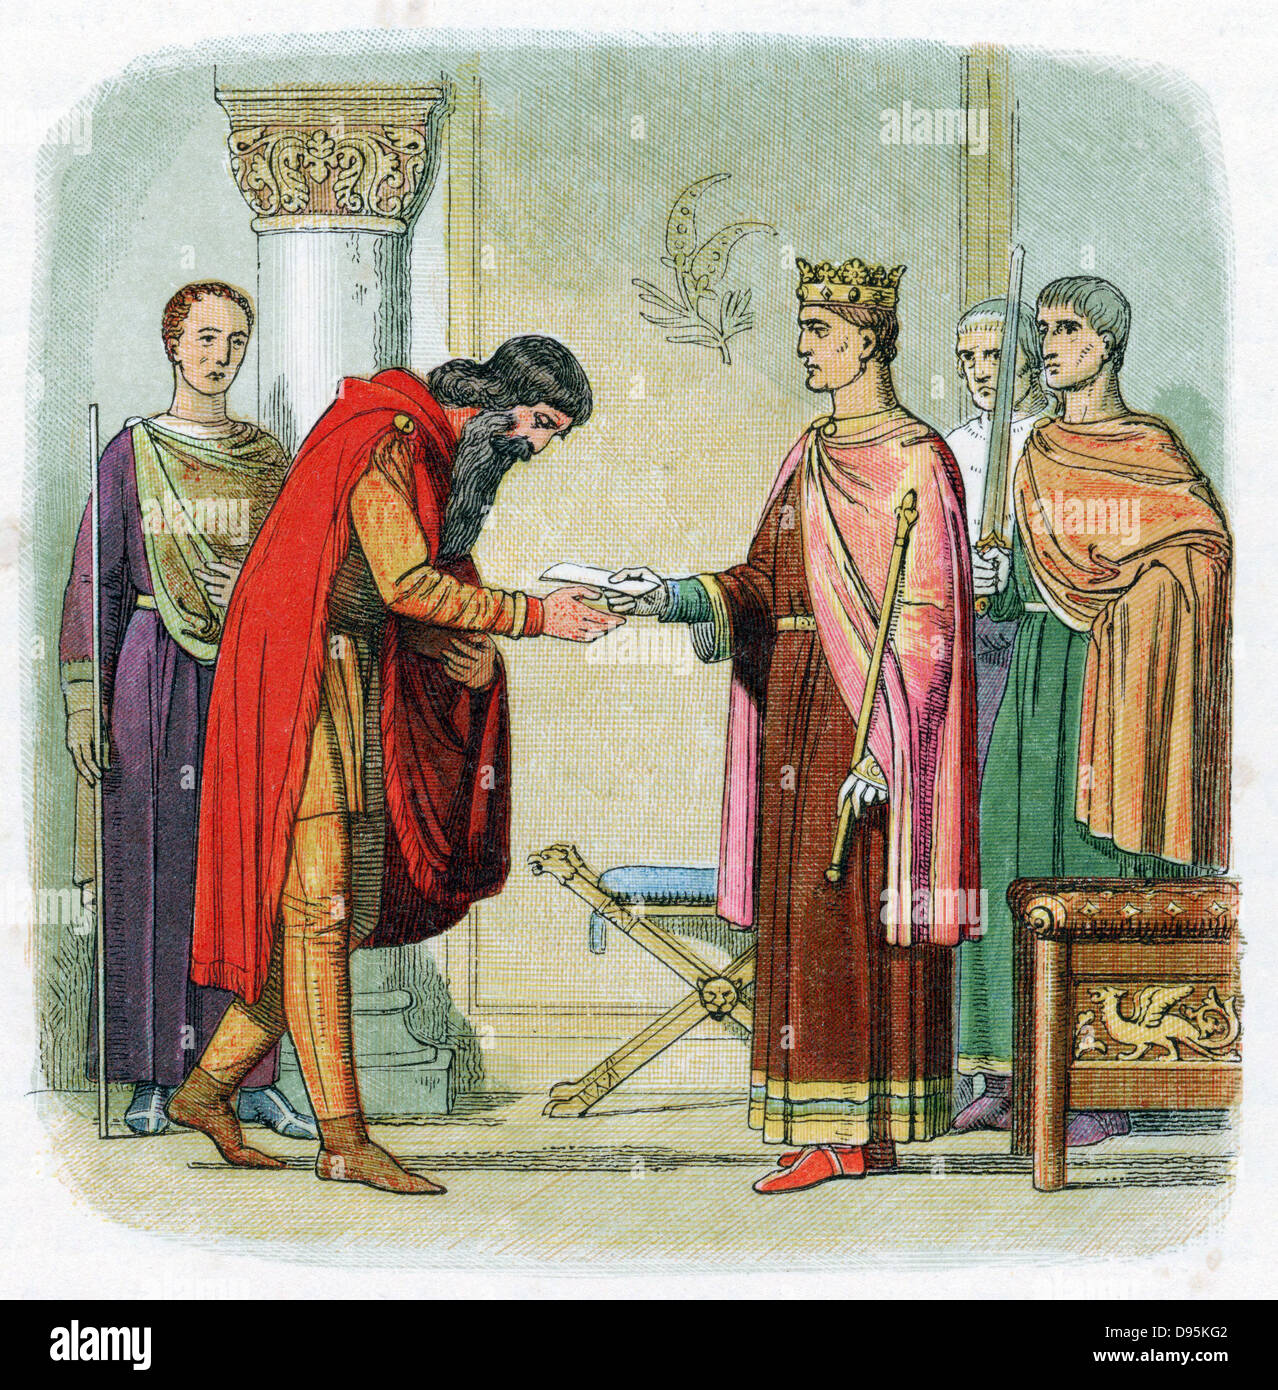 Henry II (1133-89), première Cité Plantagenêt roi d'Angleterre à partir de 1154 ; Henry autorisant Diarmaid, banni Roi de Leinster, d'imposer de force chez les anglais. Gravure sur bois imprimée en couleur c1860. Banque D'Images